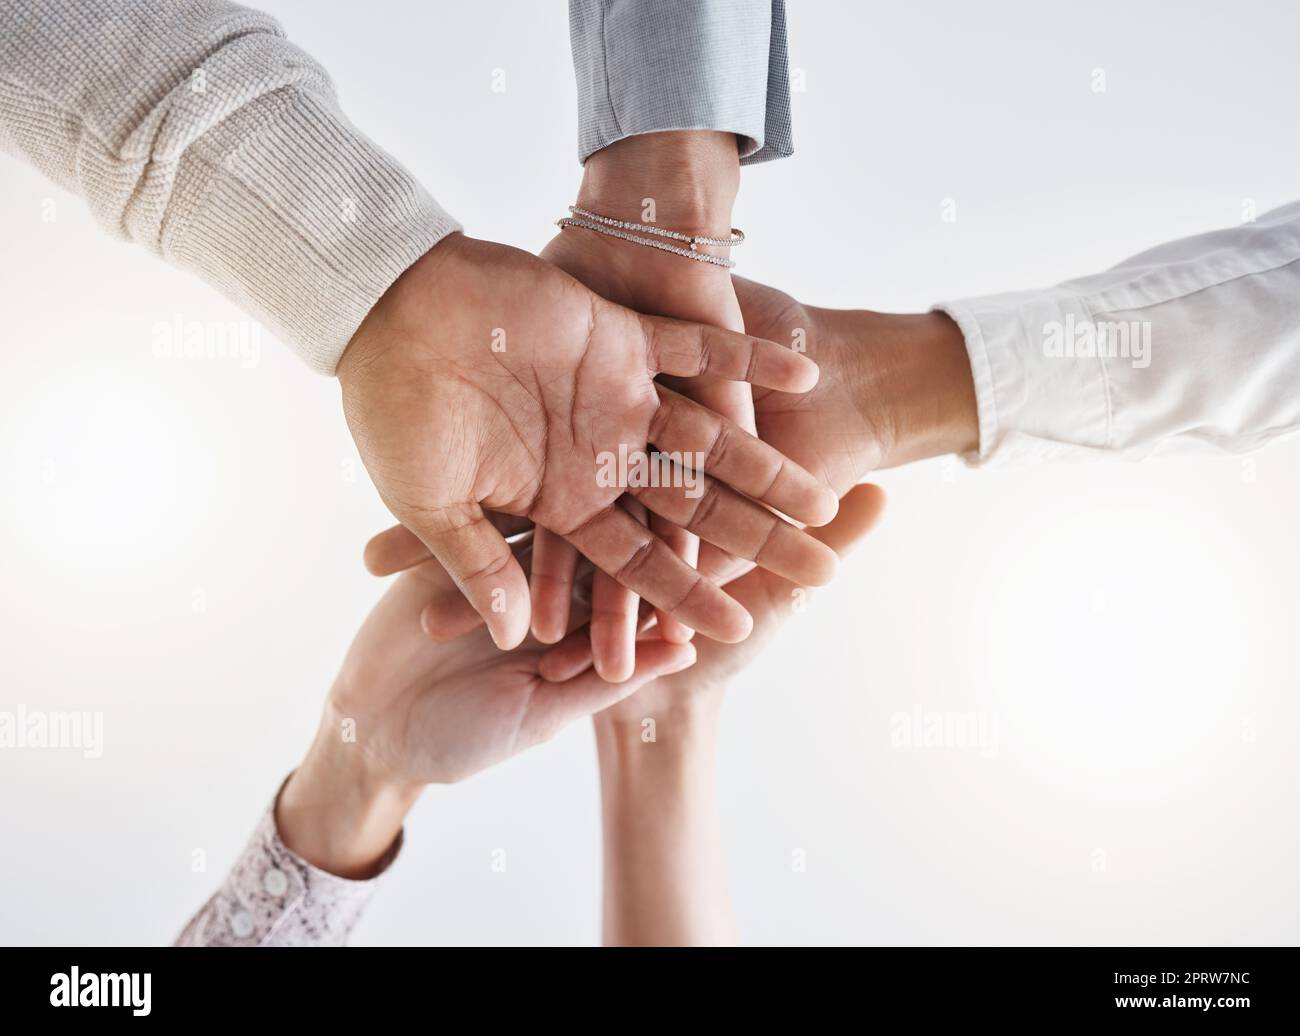 Teamwork Hände, Partnerschaft und Zusammenarbeit Unterstützung für Gewinner, Motivation und Zielvision. Unter der Unternehmensgruppe verbinden sich die Menschen mit Vertrauen, Erfolgskomfort und arbeiten gemeinsam für Solidarität Stockfoto